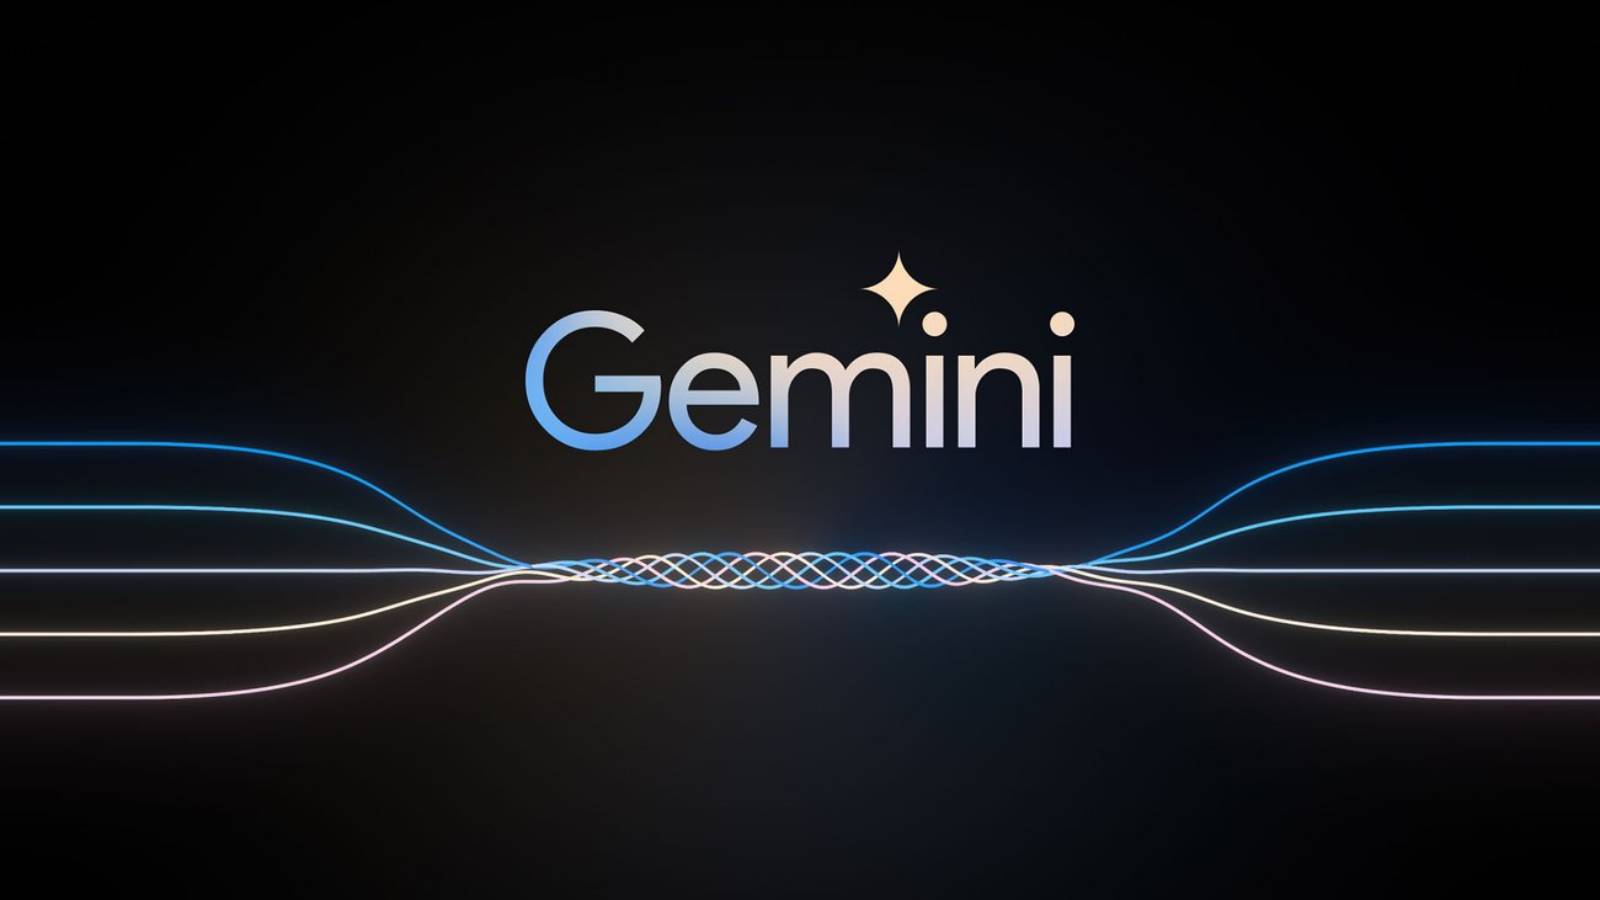 Google ENORMA FÖRÄNDRINGAR Android Gemini Artificiell Intelligens